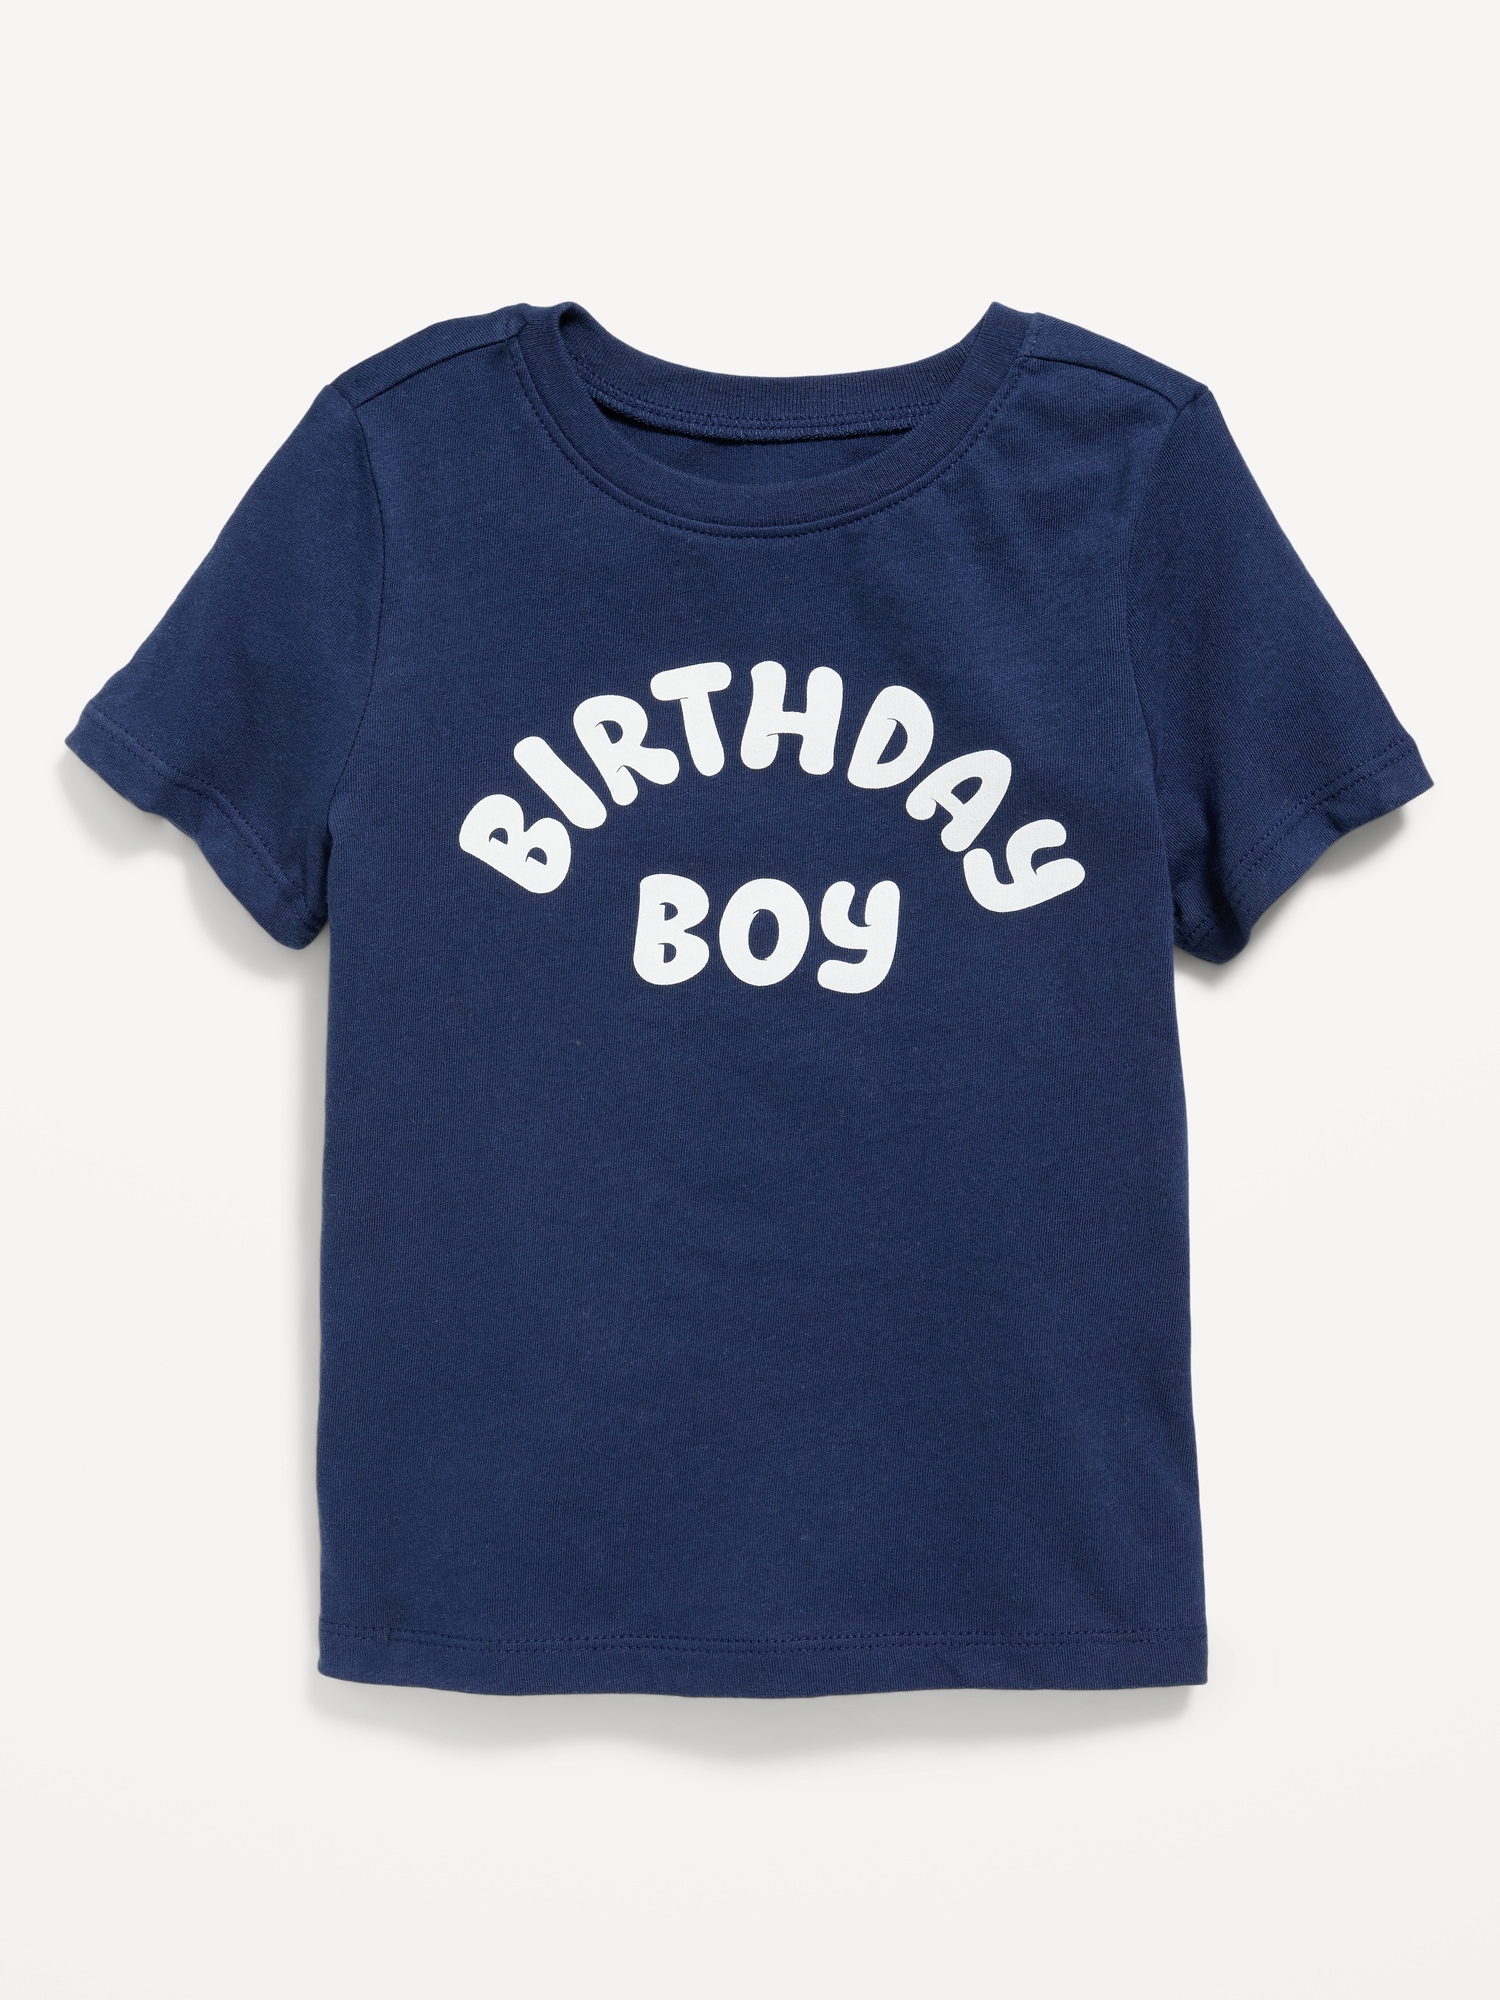 올드네이비 Birthday Boy Graphic T-Shirt for Toddler Boys Hot Deal